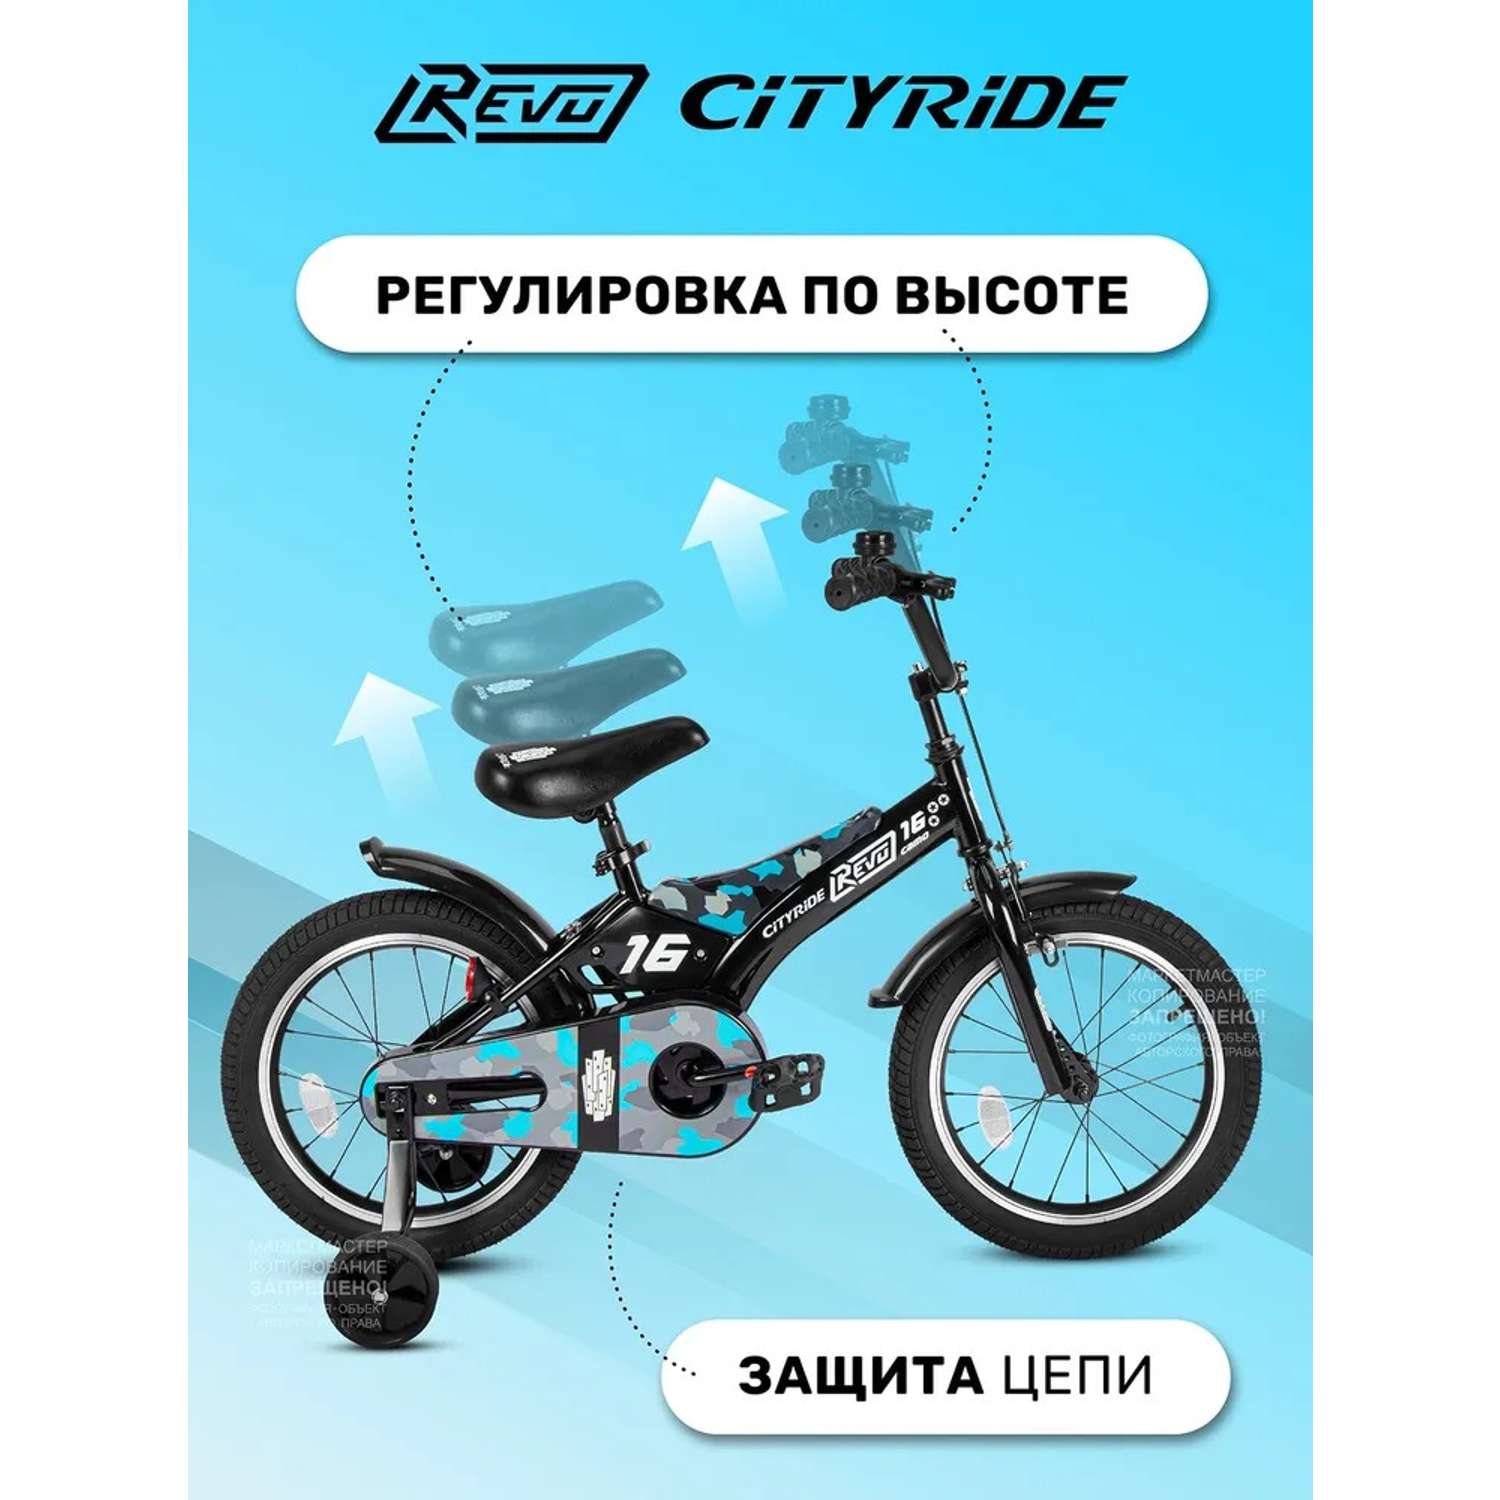 Детский велосипед CITYRIDE Двухколесный Cityride REVO Рама сталь Кожух цепи 100% Диски алюминий 16 Втулки сталь - фото 2